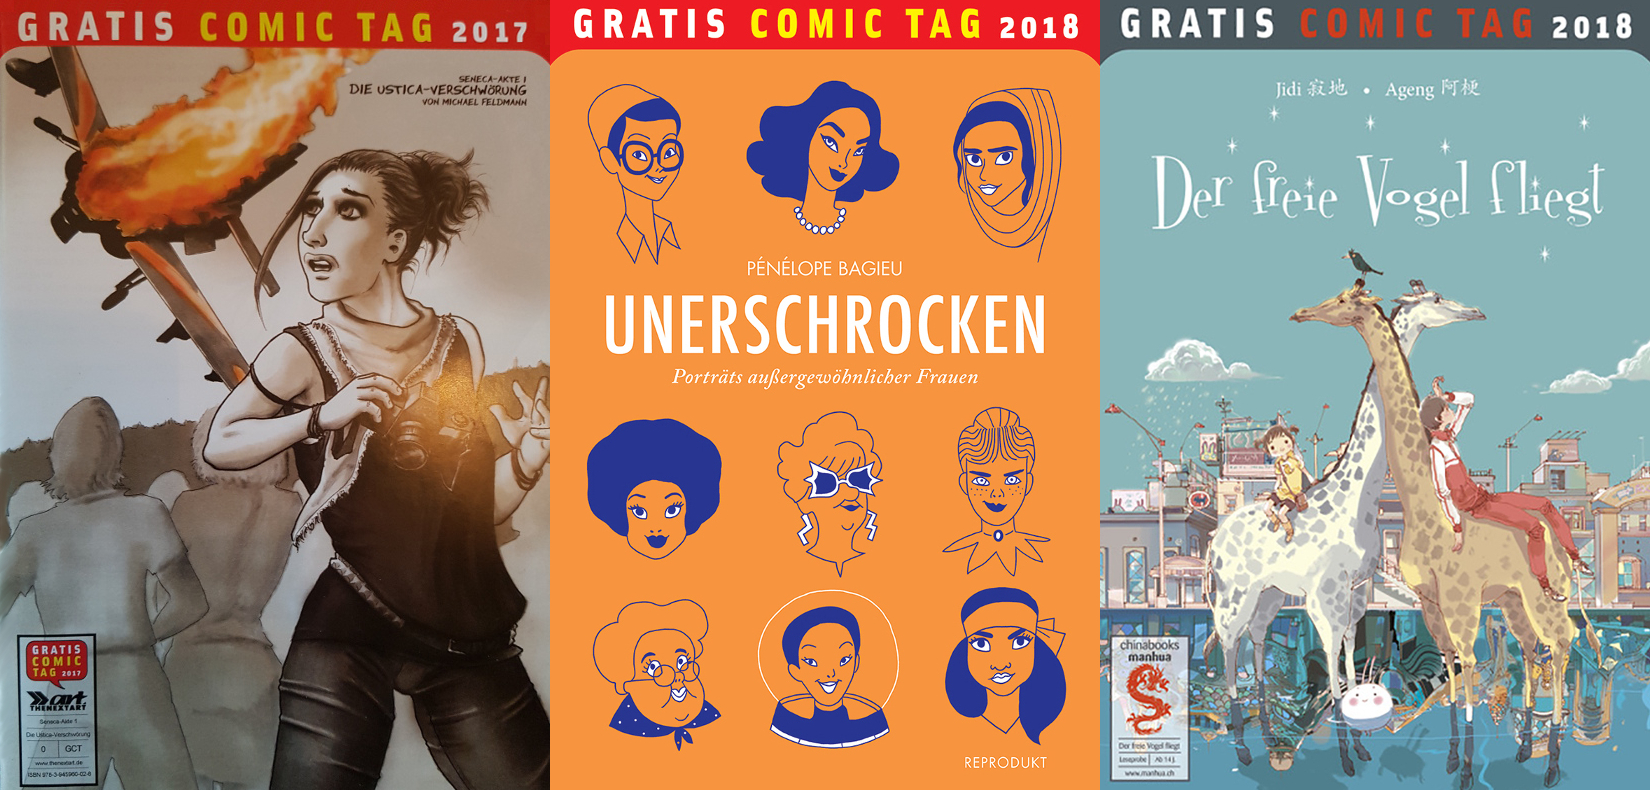 deutsch Der freie Vogel fliegt Comic Vom Gratis Comic Tag 2018 